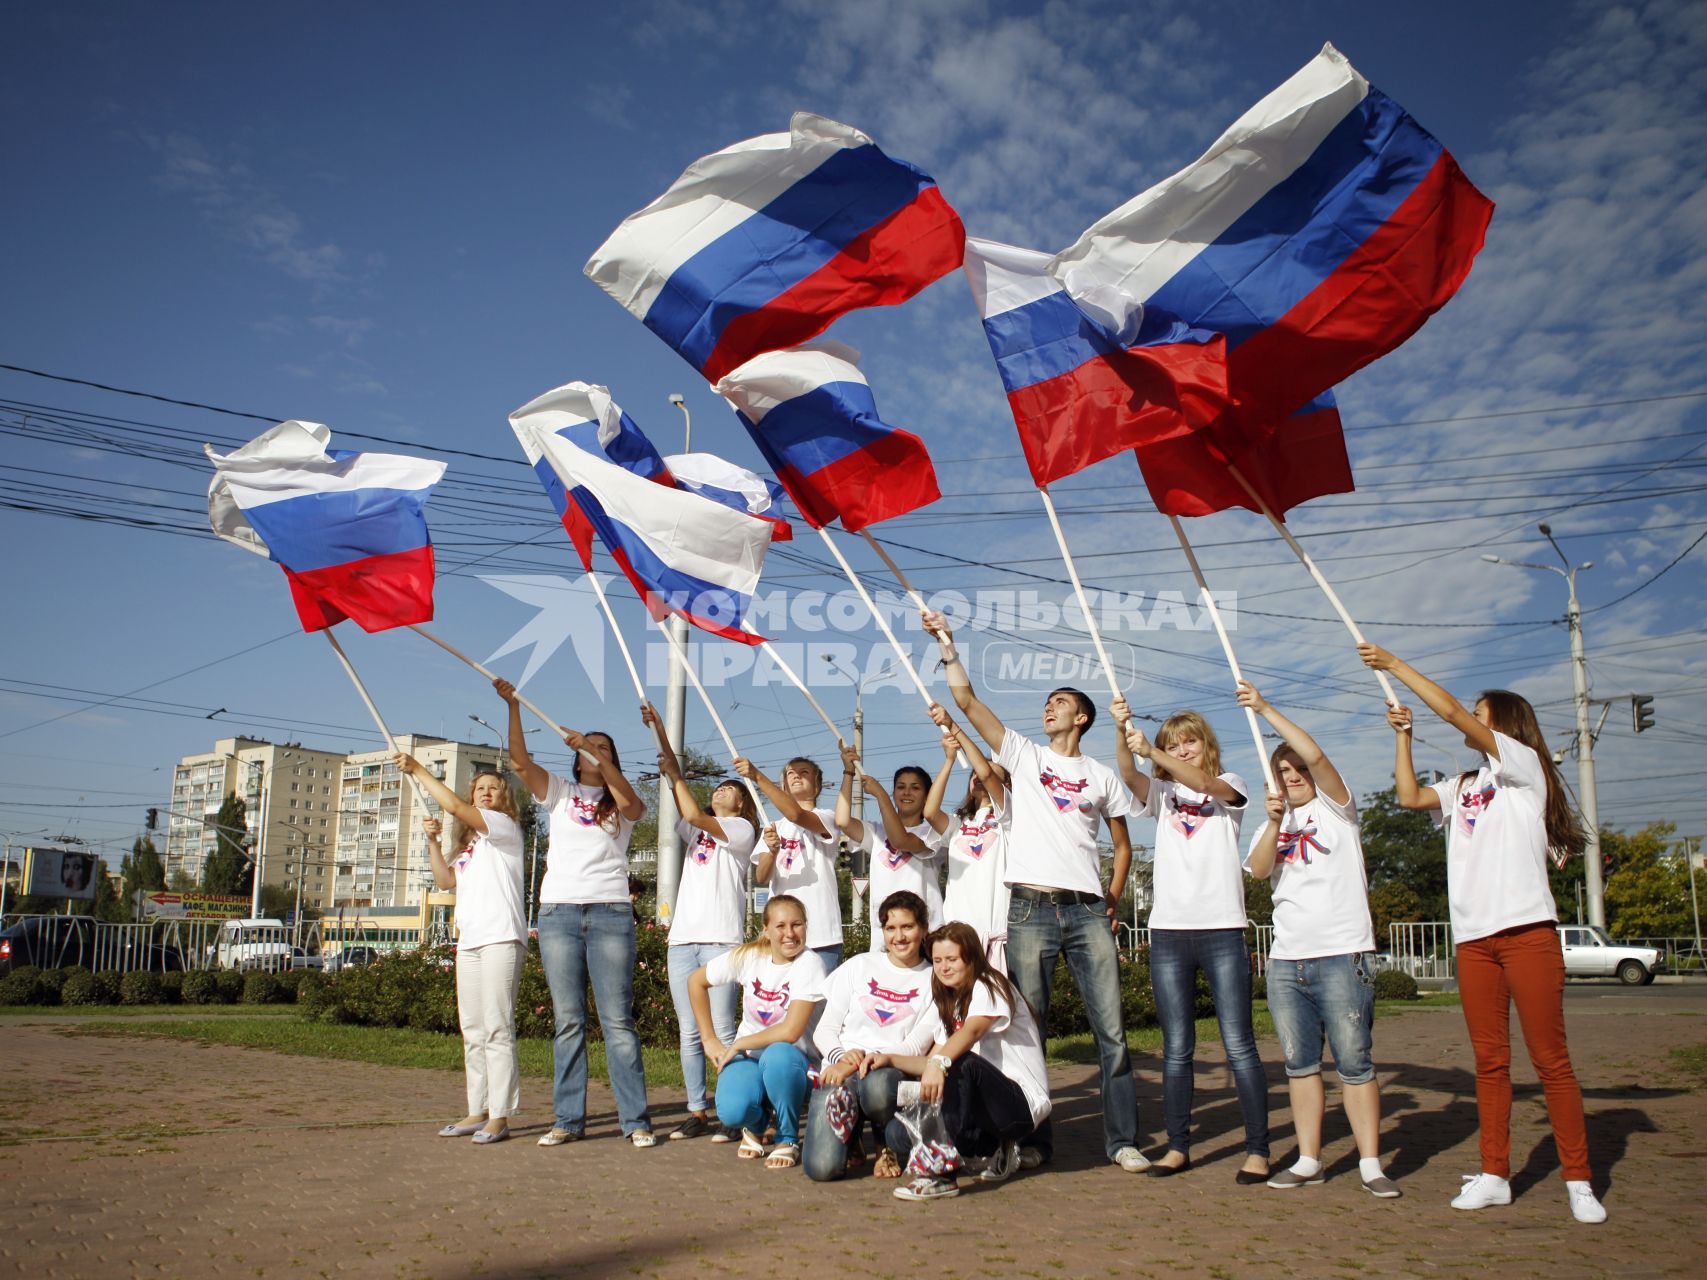 Волонтеры поздравляют автомобилистов с днем флага. На снимке: люди с российским флагом в руках.